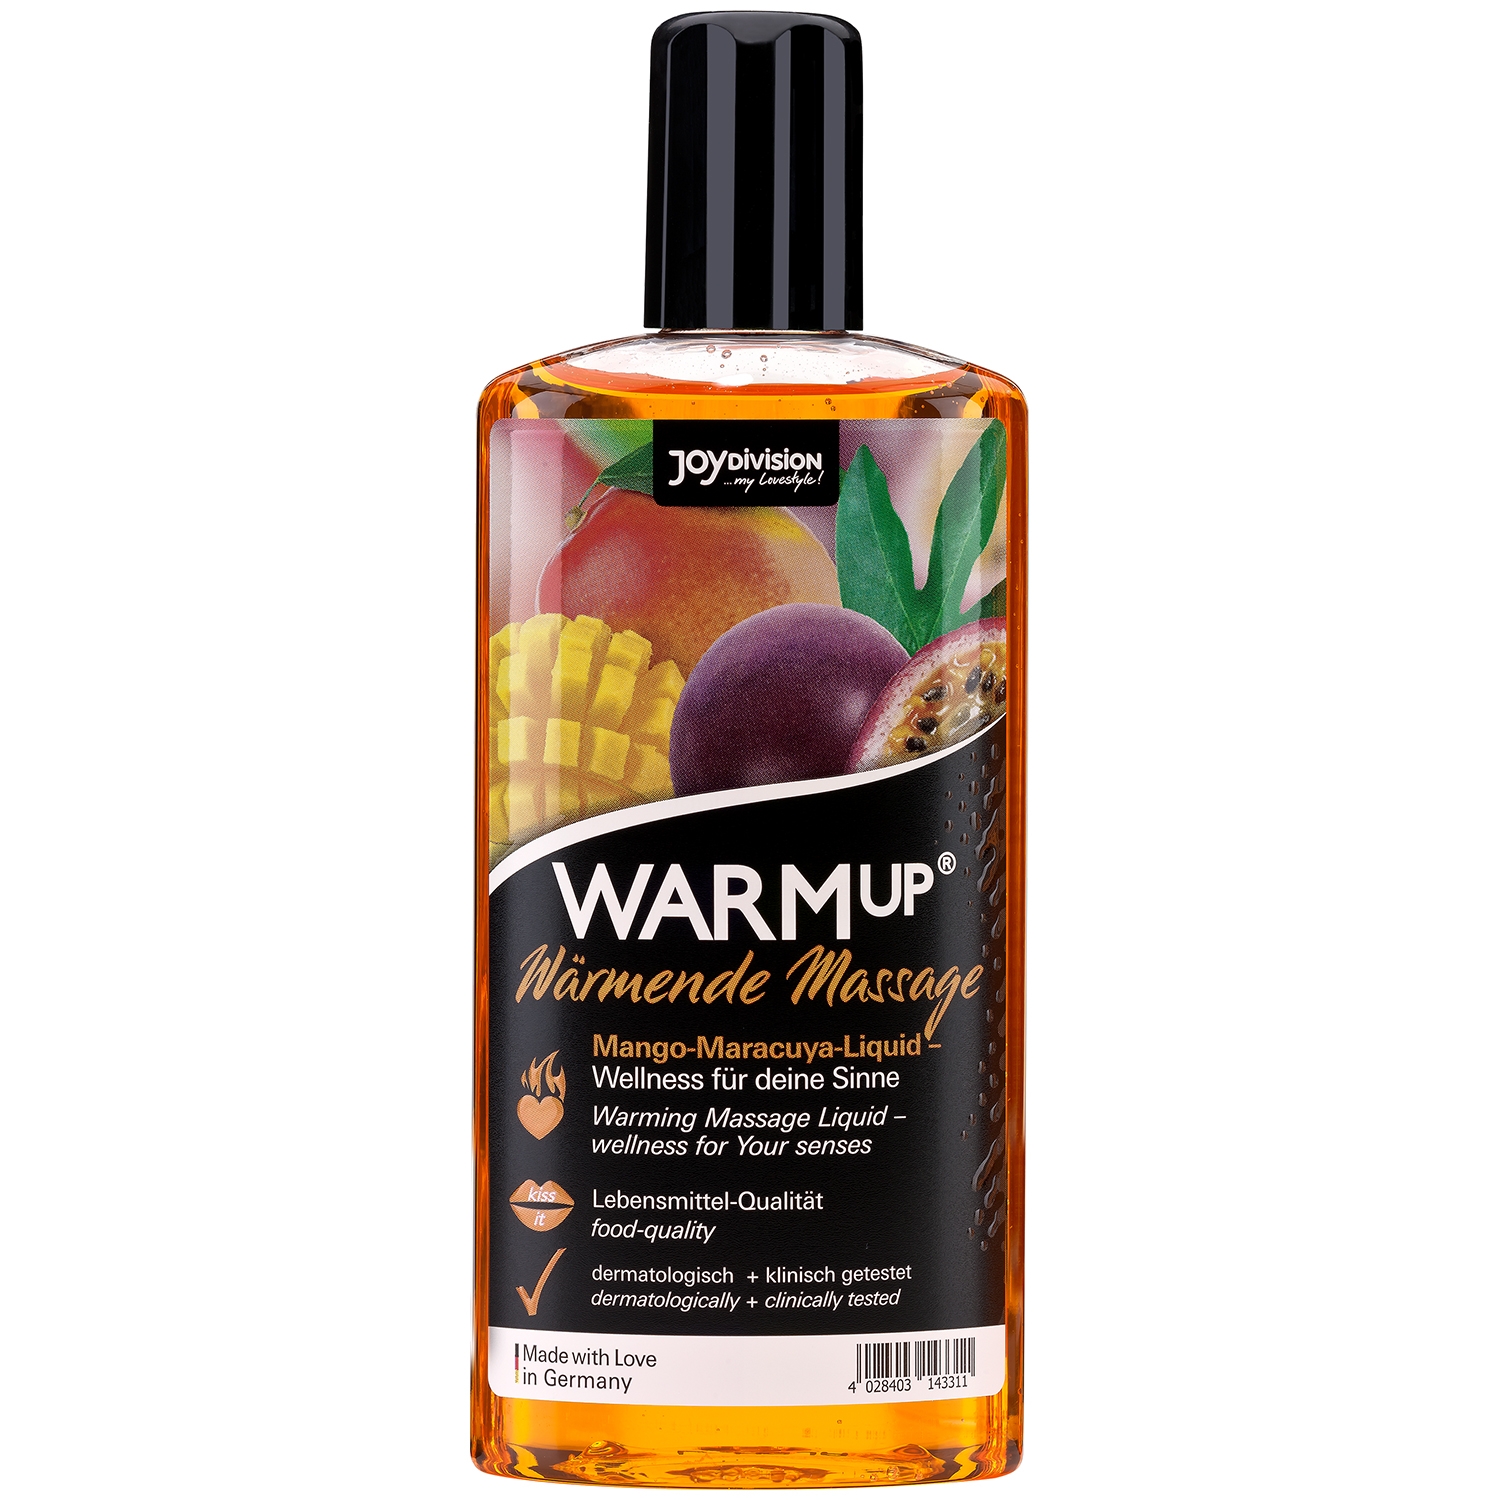 5: JoyDivision WARMup Varmende Massageolie med Smag 150 ml   - Orange